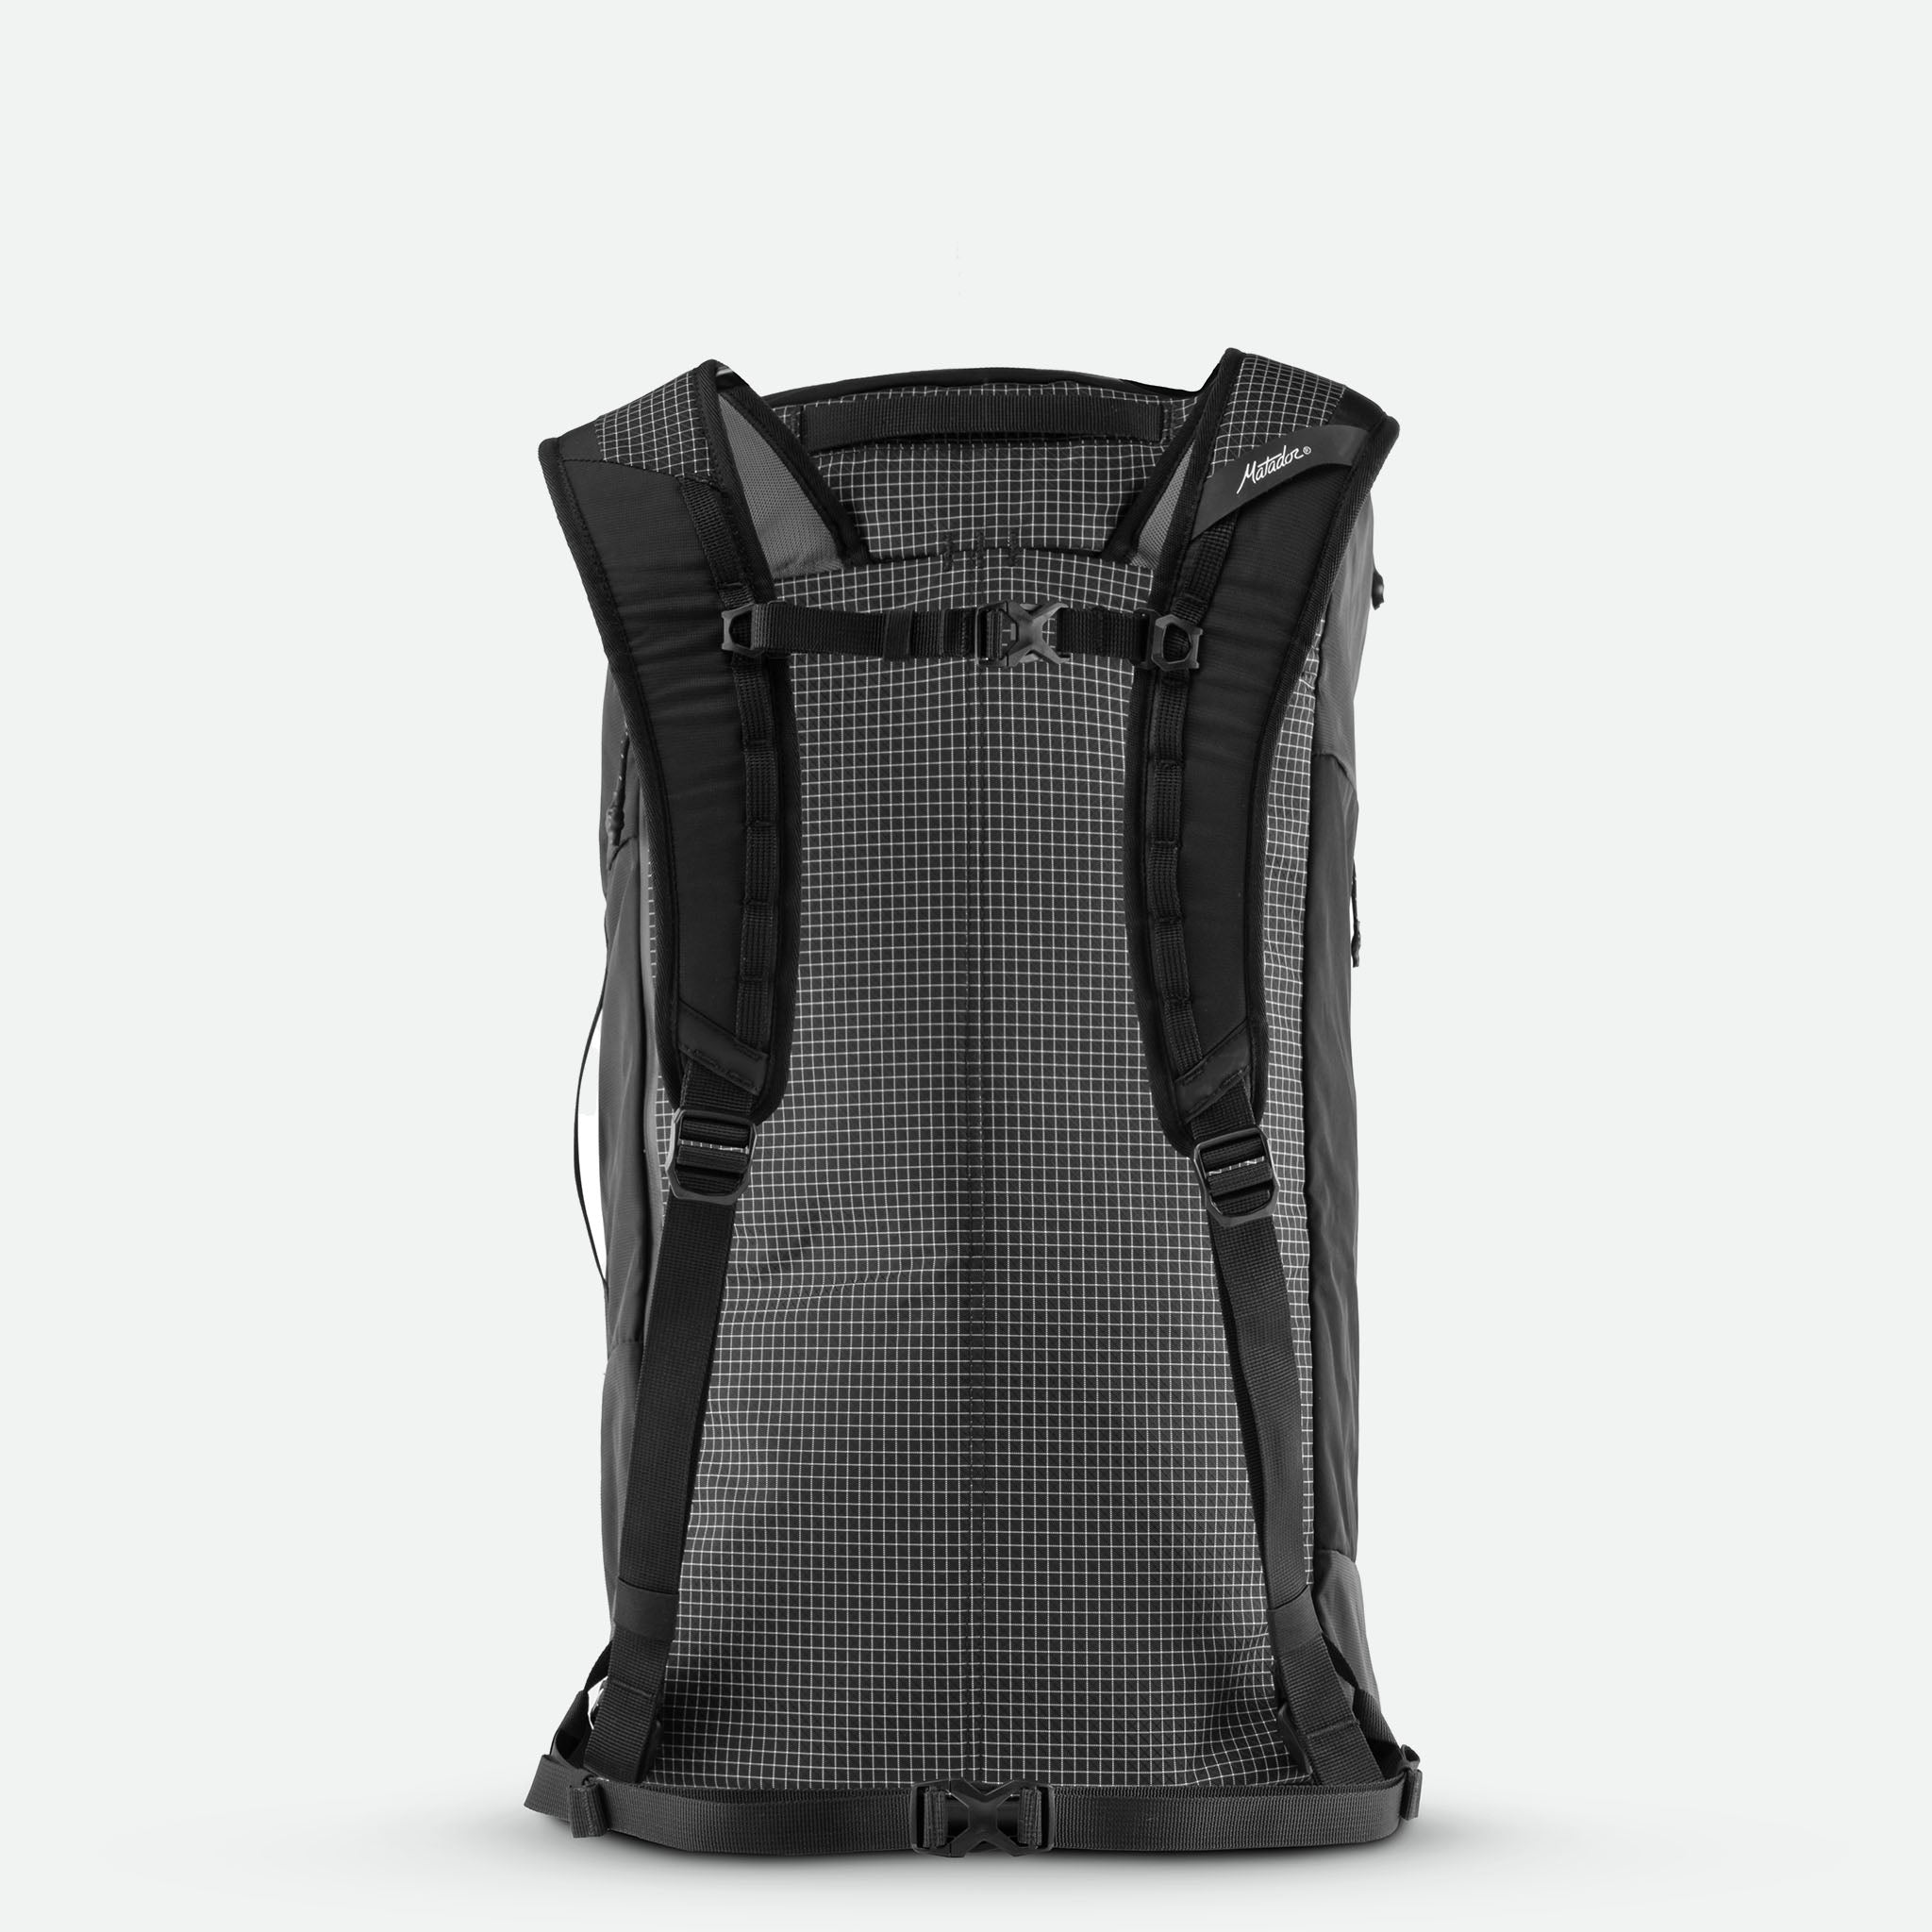 SEG45 Travel Pack - rejsetaske med 45 liters kapacitet - kan bæres som rygsæk og duffel bag - integrerede packing cubes